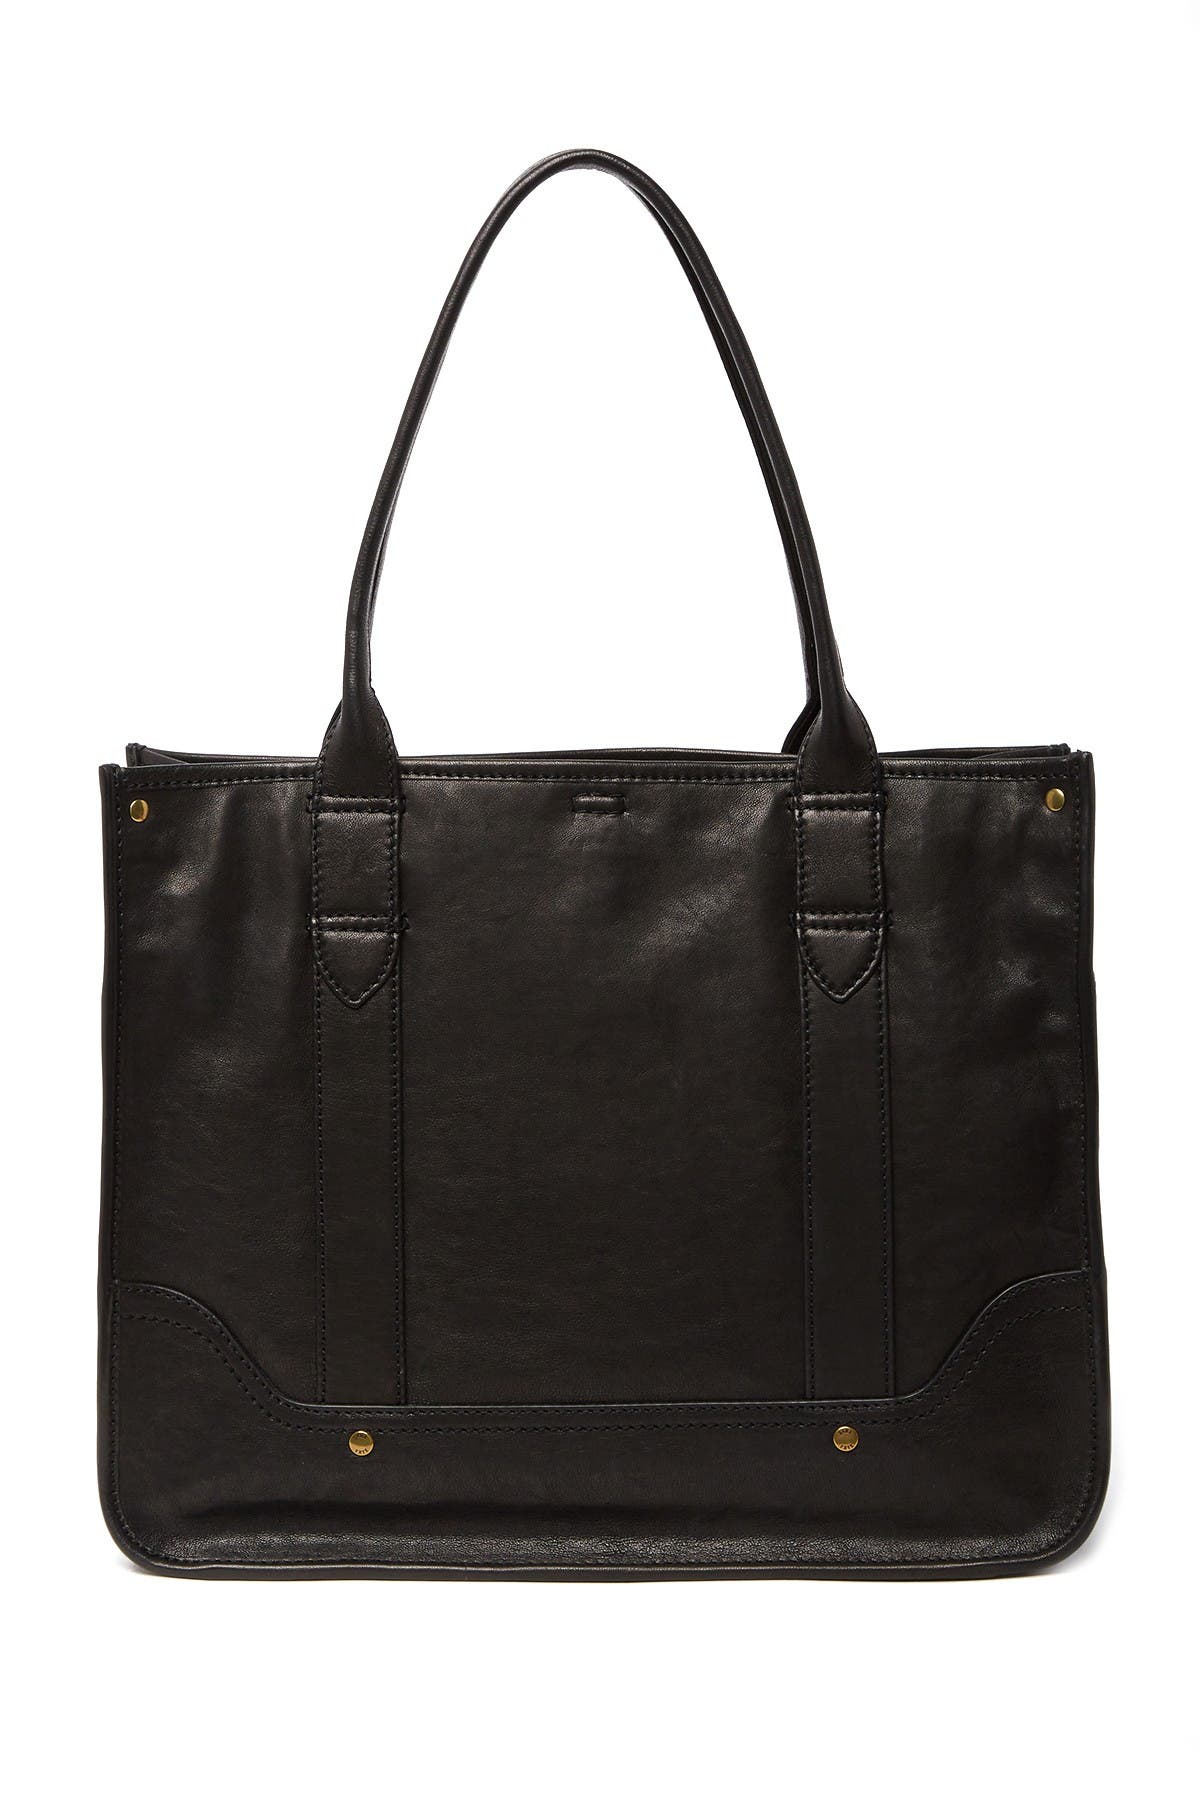 Frye | Madison Shopper Leather Tote Bag | Nordstrom Rack